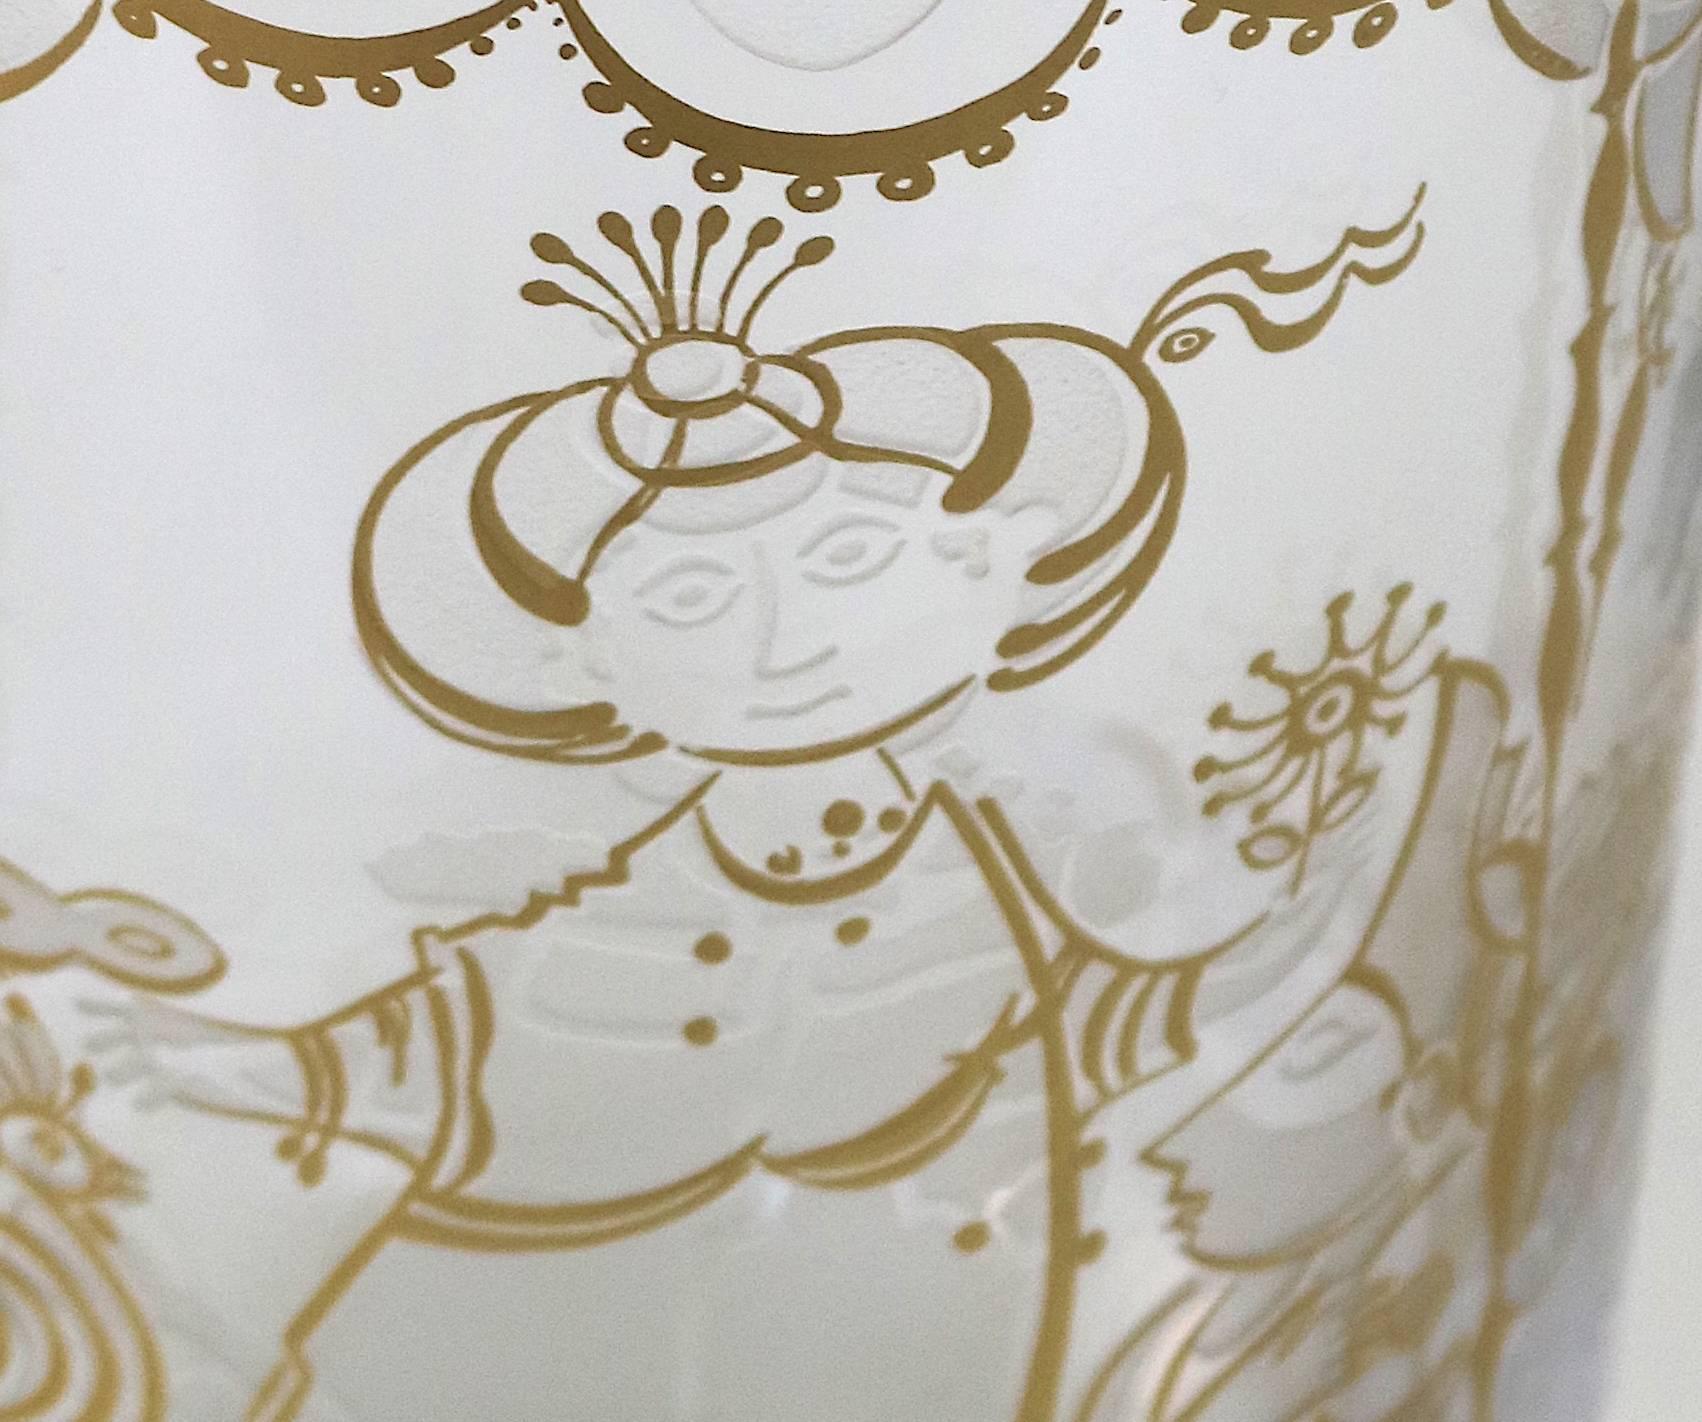 Etched Bjorn Wiinblad Crystal Vase 22K etched Gold Charming Design- signed For Sale